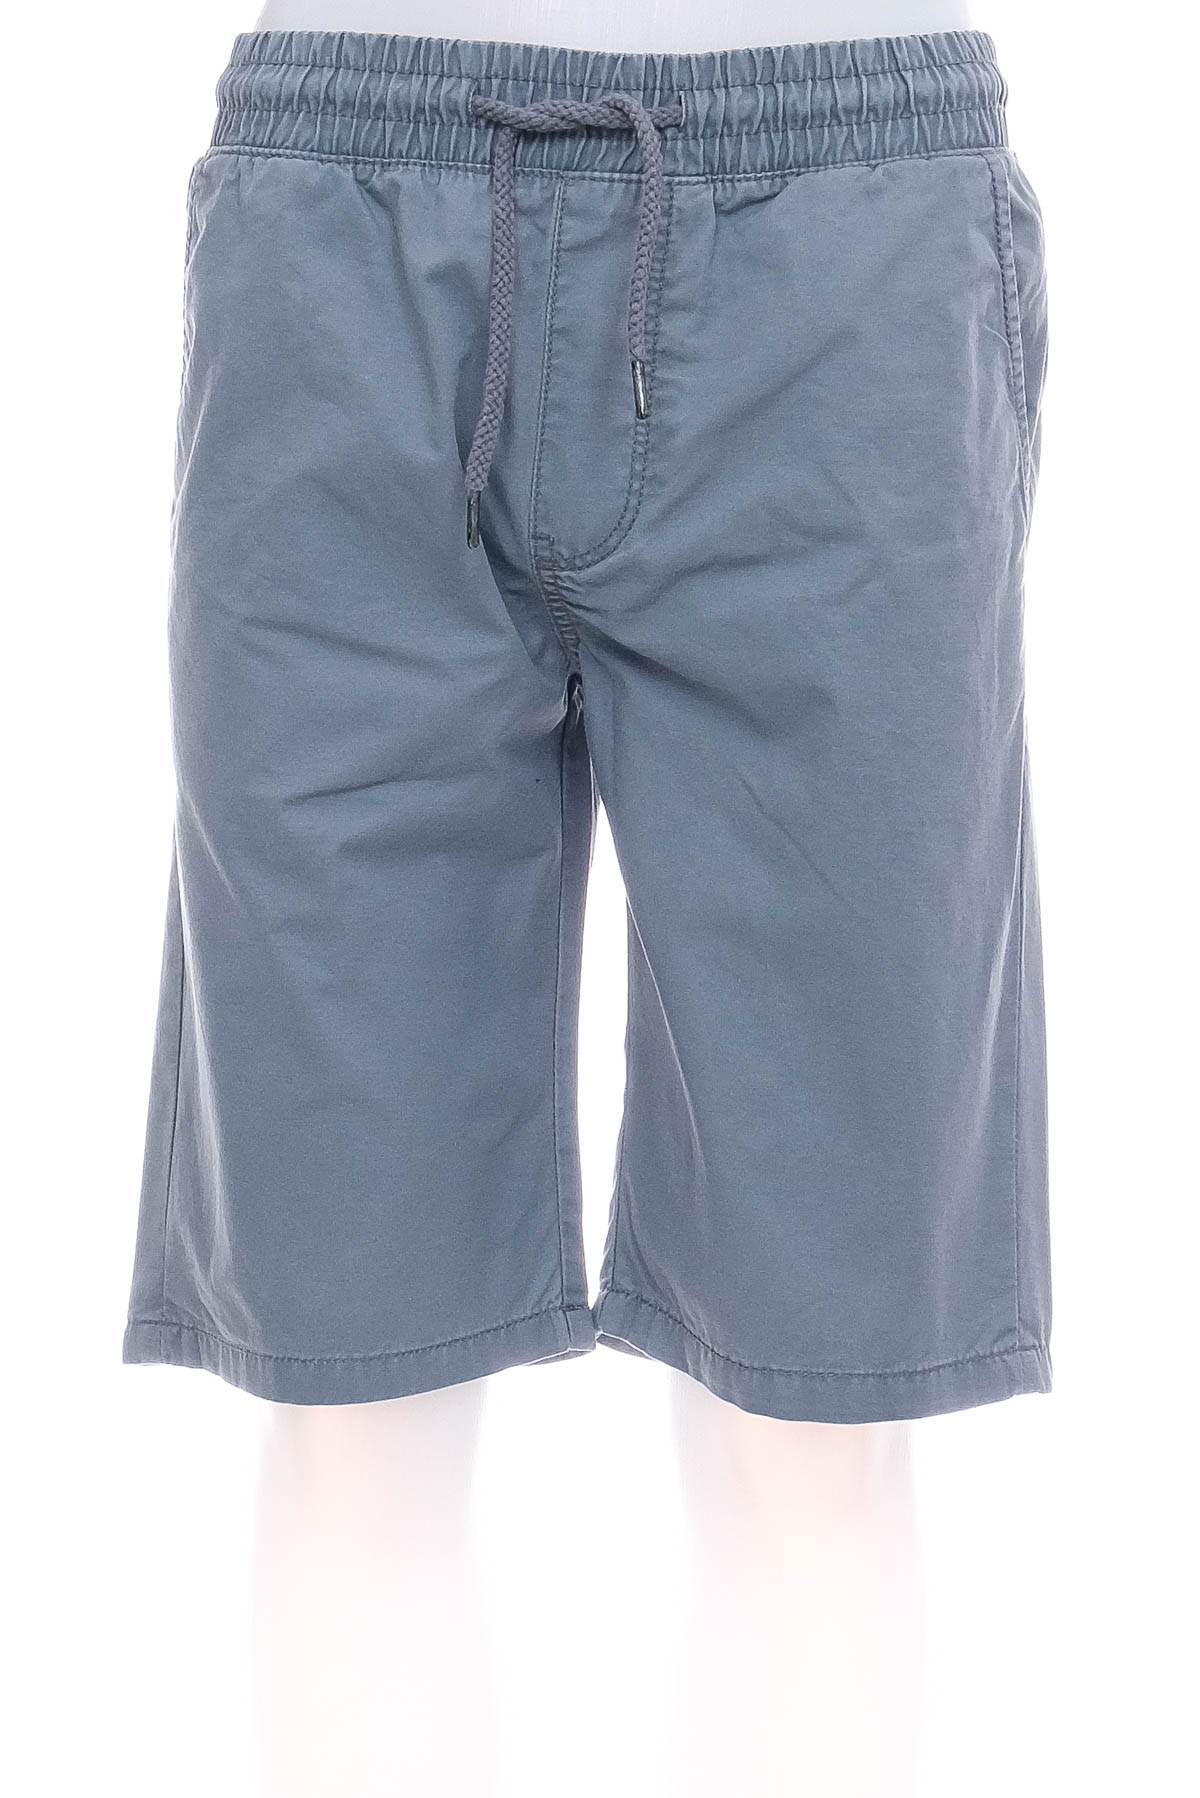 Men's shorts - FSBN - 0